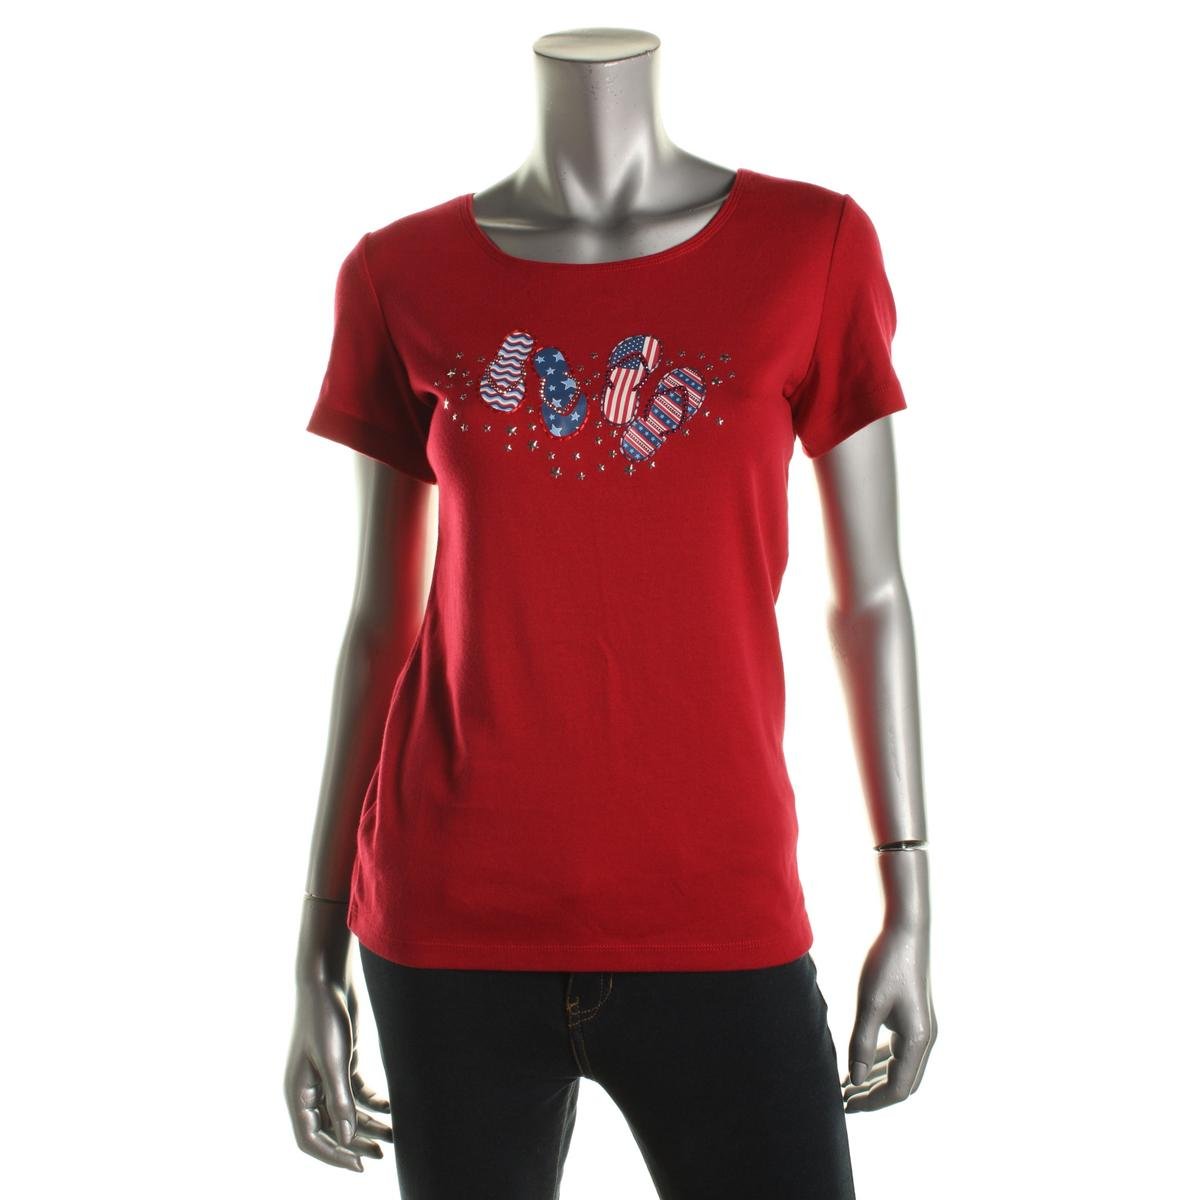 Karen Scott 1487 Womens Cotton Embellished Short Sleeves T-Shirt Top BHFO